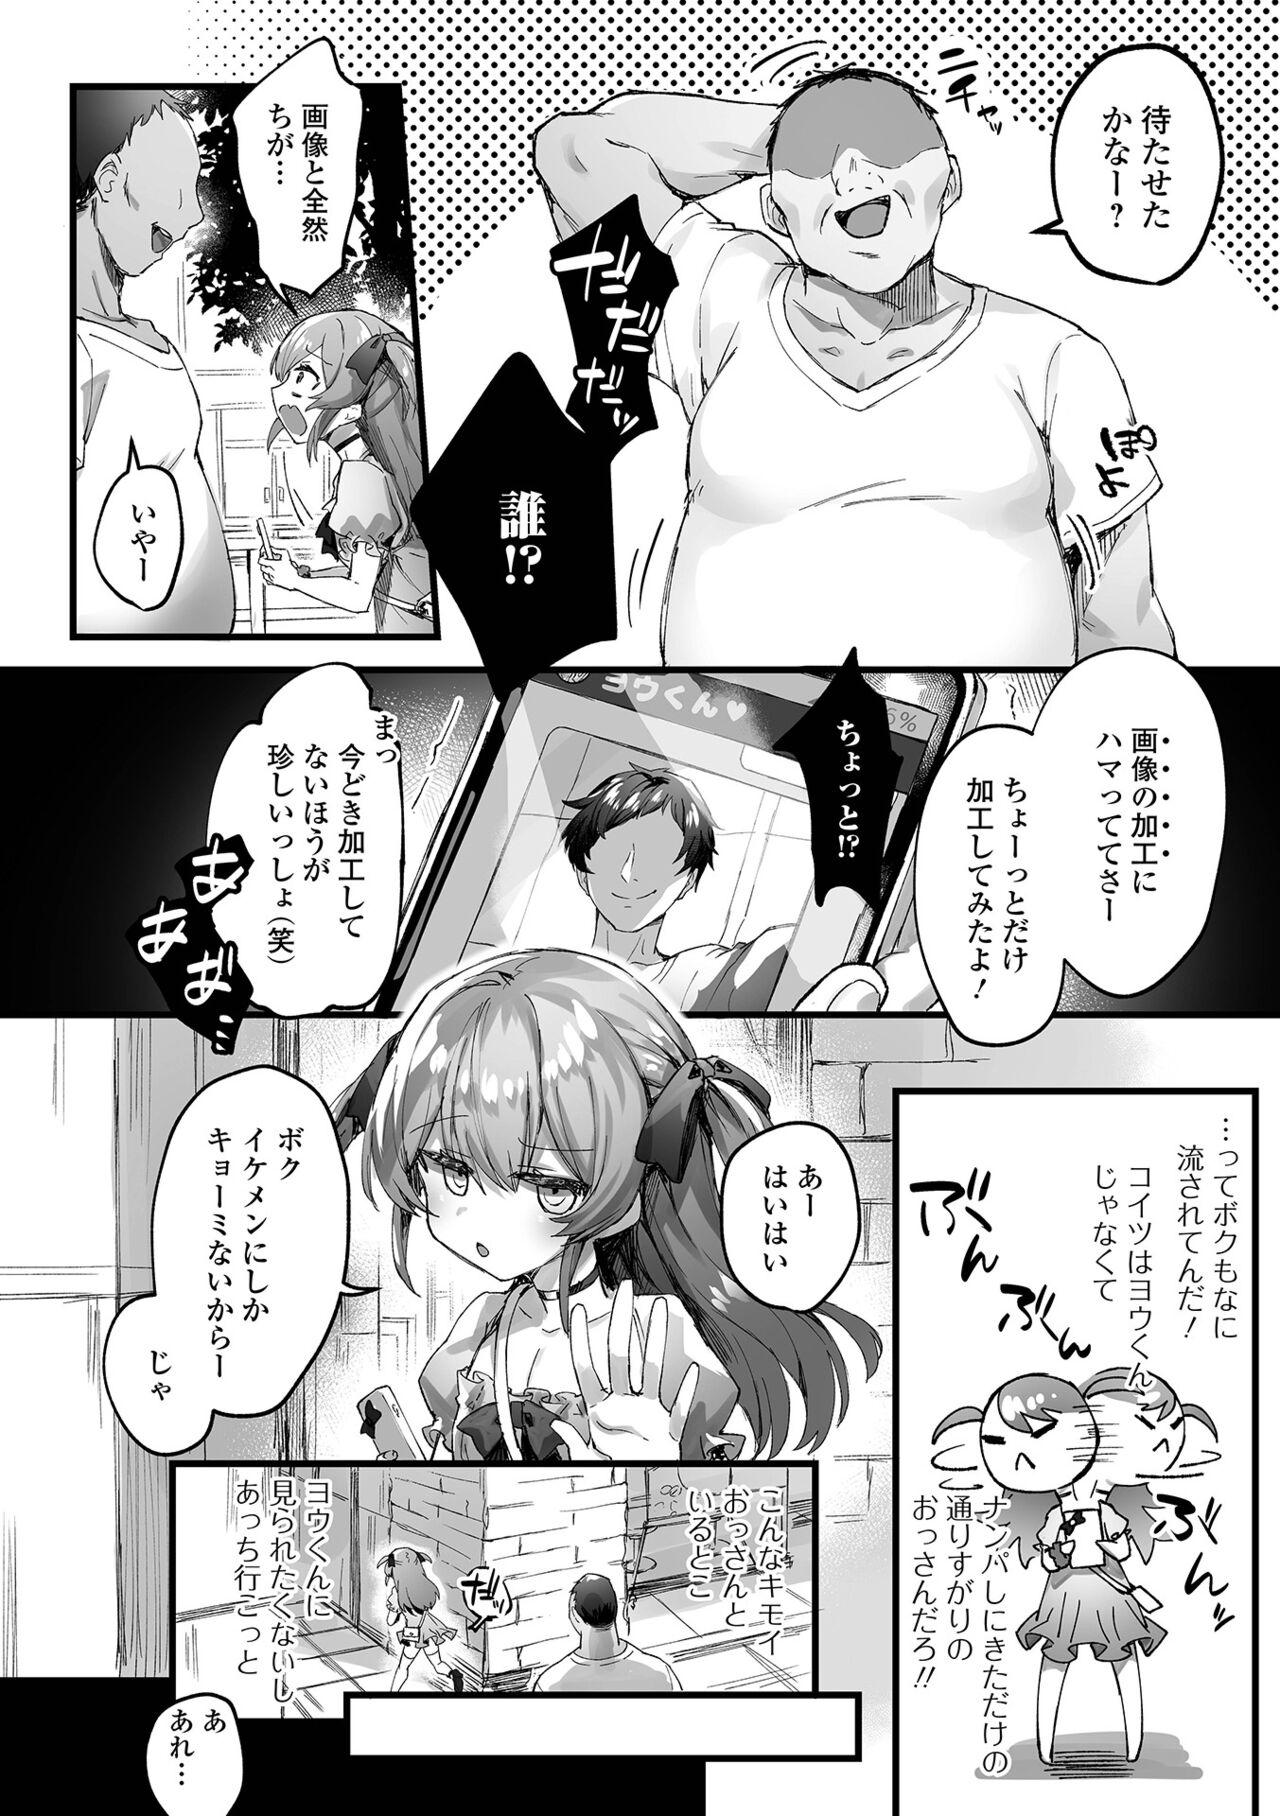 Gay 3some You-kun Daisuki Gayfuck - Page 2